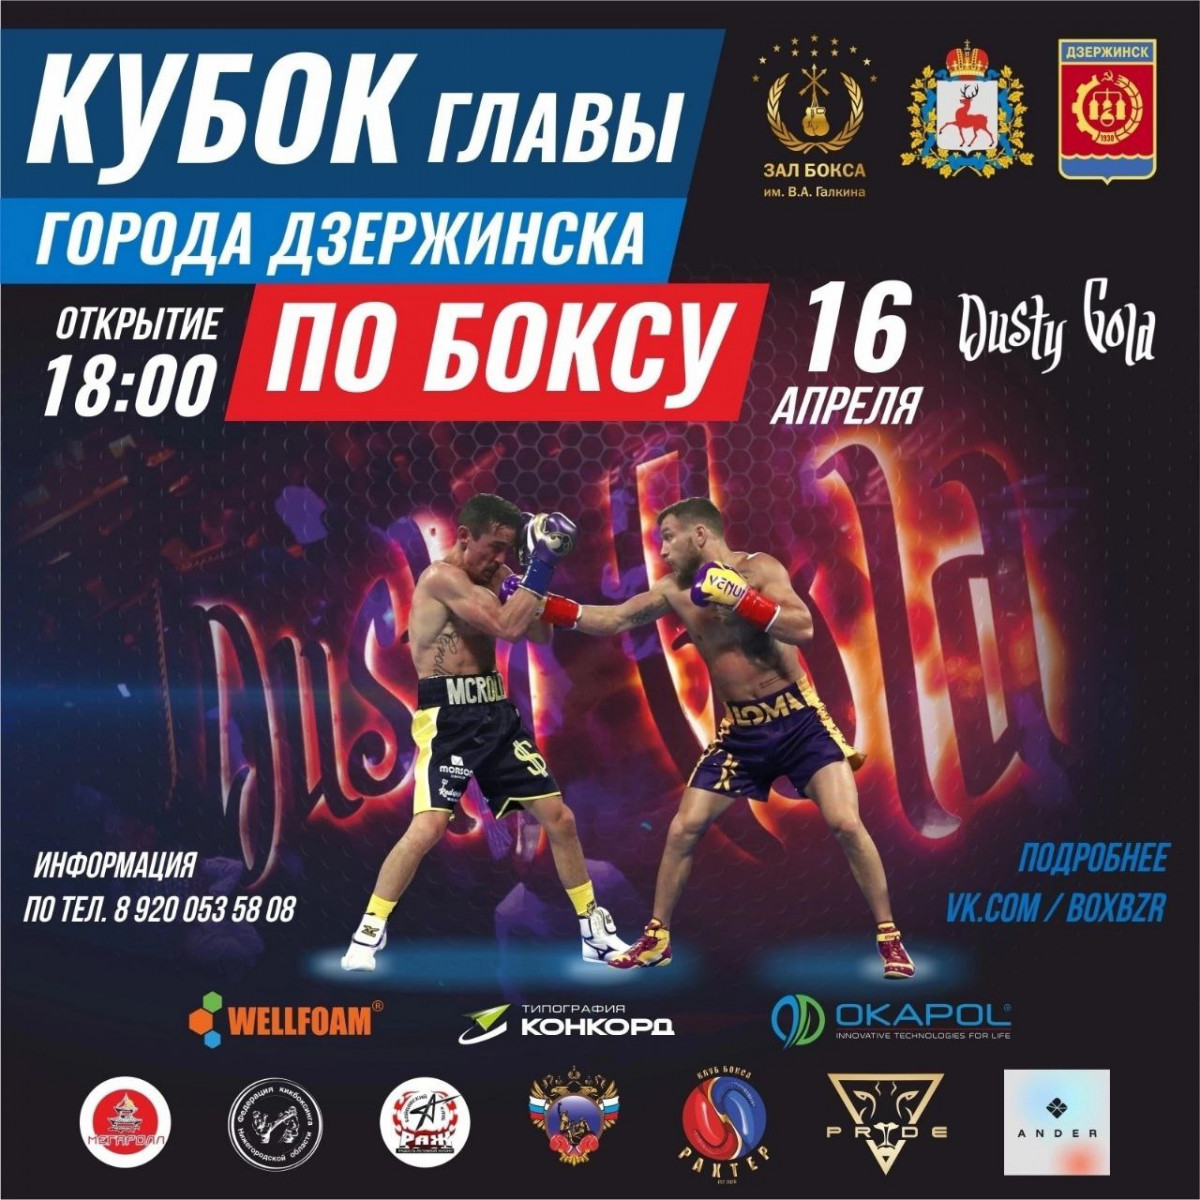 Боксерский турнир на Кубок главы Дзержинска состоится в апреле